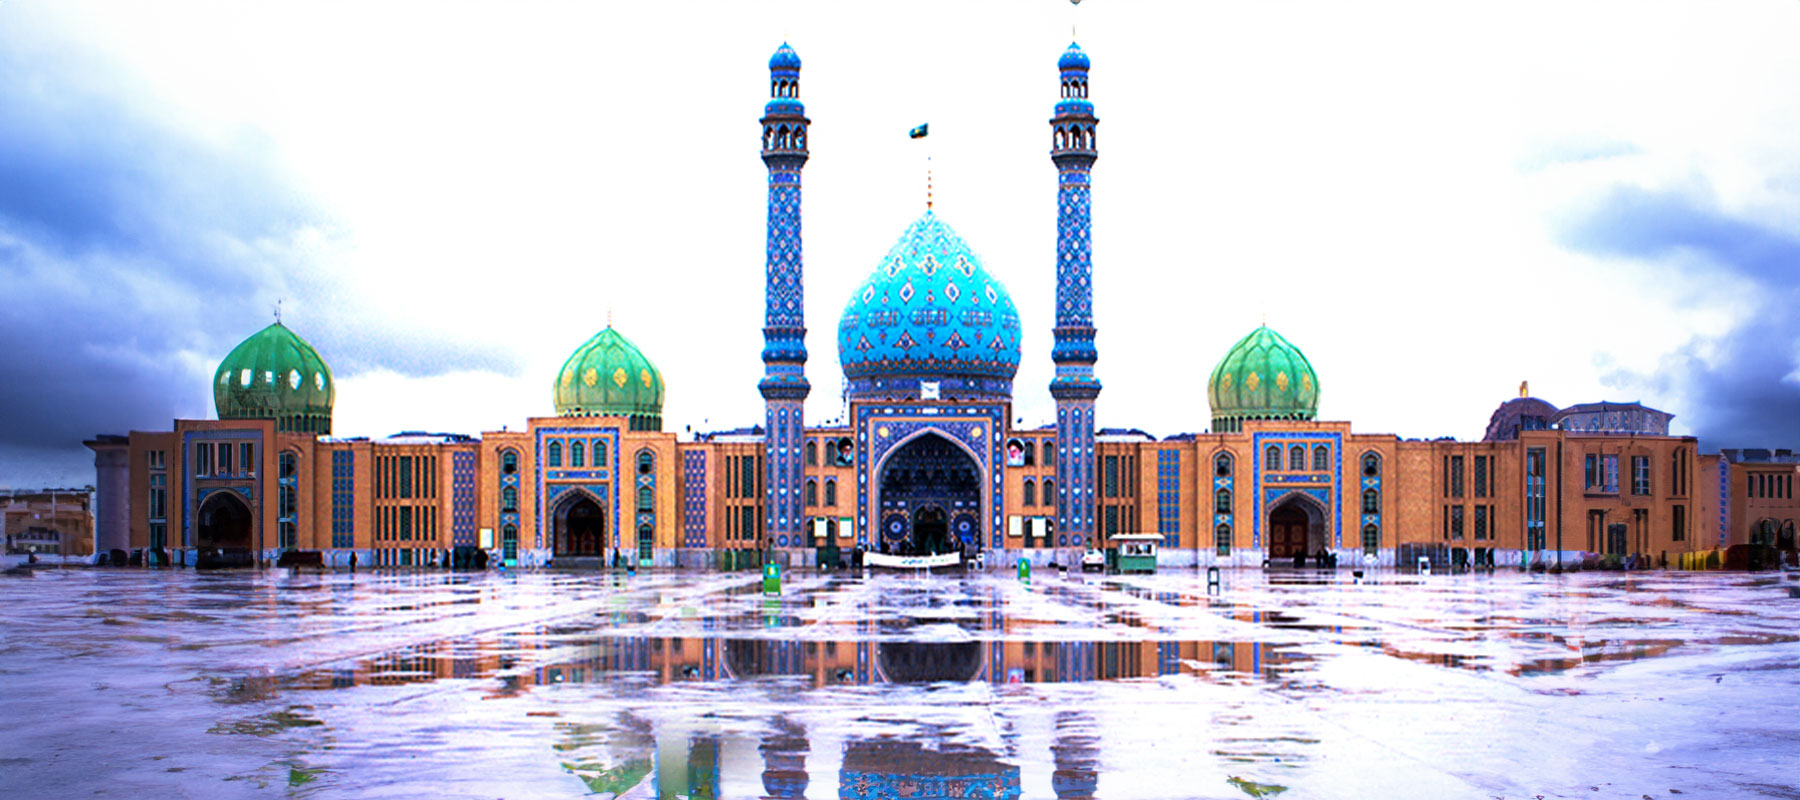 نبذة عن مسجد جوهر شاد في مشهد